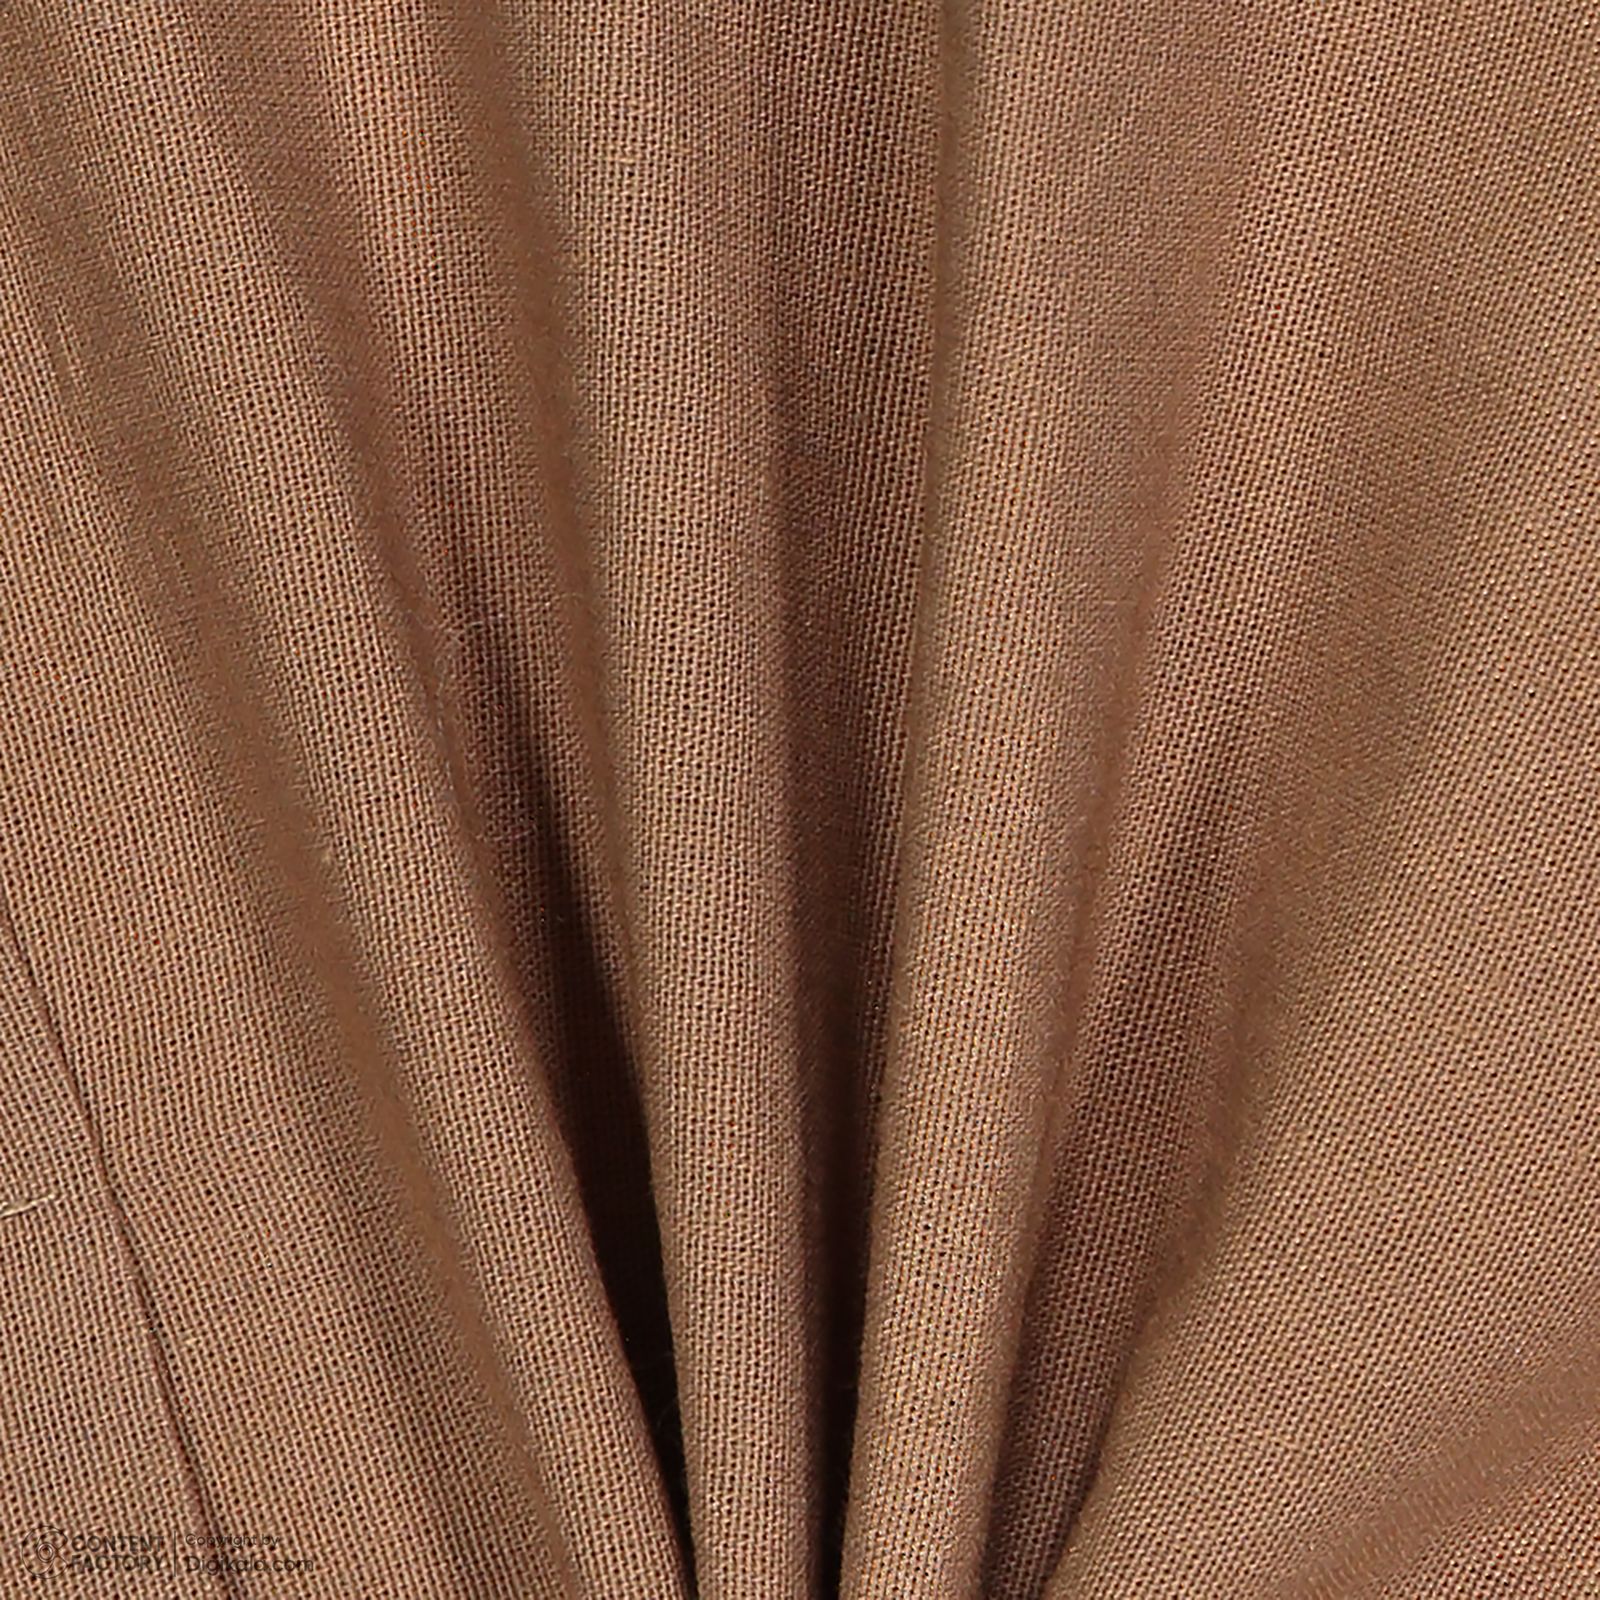 ست تی شرت و شلوارک پسرانه سون پون مدل 13911093 رنگ طوسی -  - 7